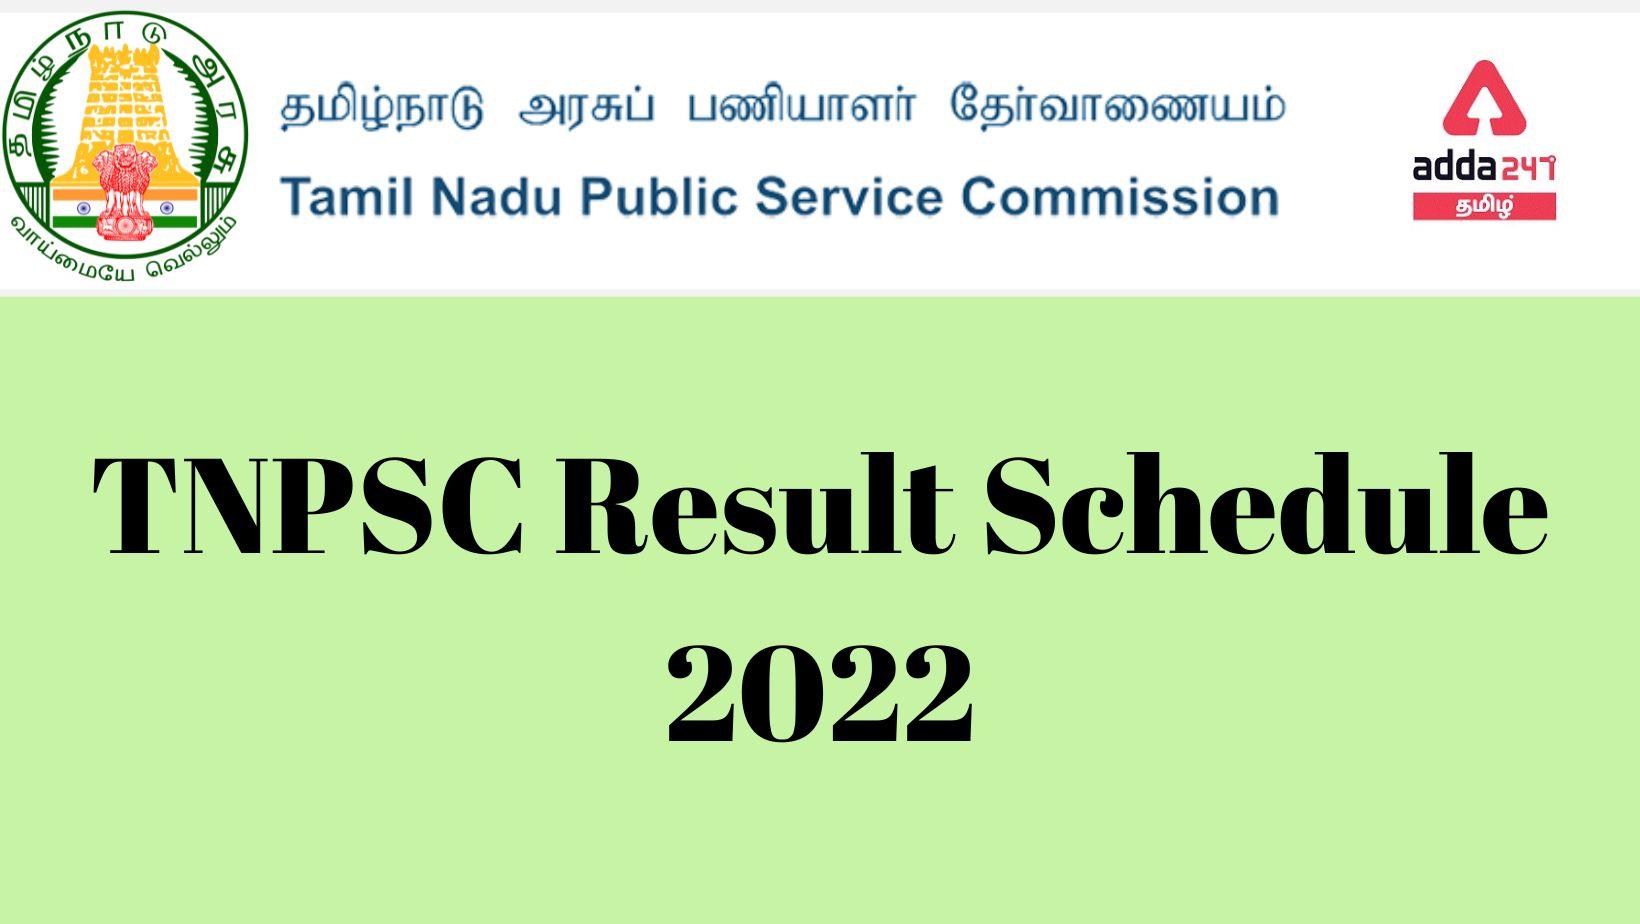 TNPSC Result Schedule 2022